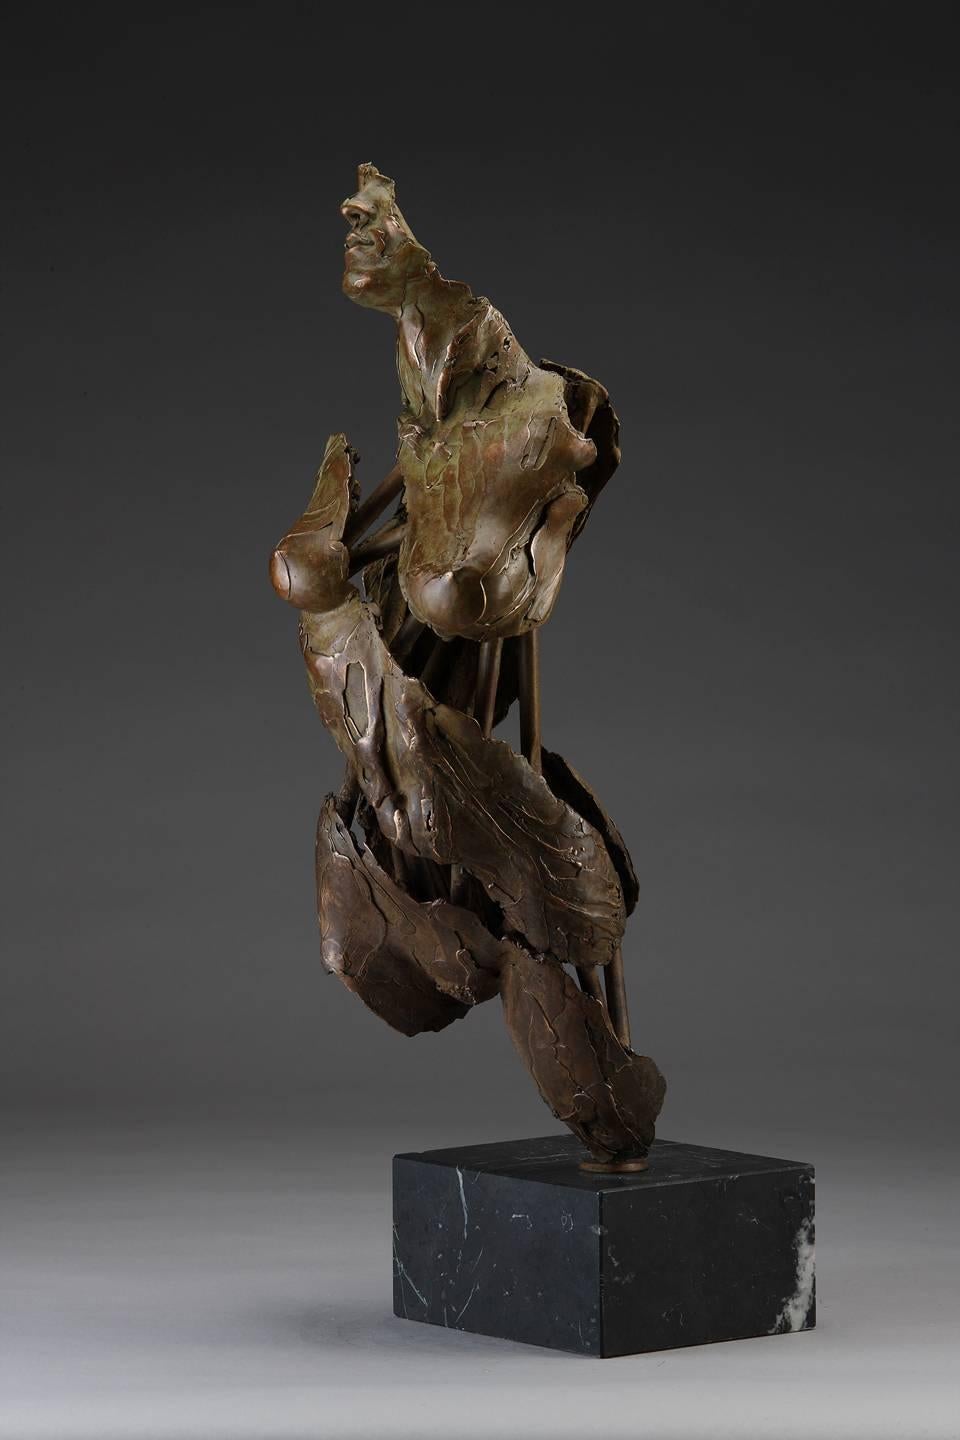 Engel Muriel – Sculpture von Blake Ward